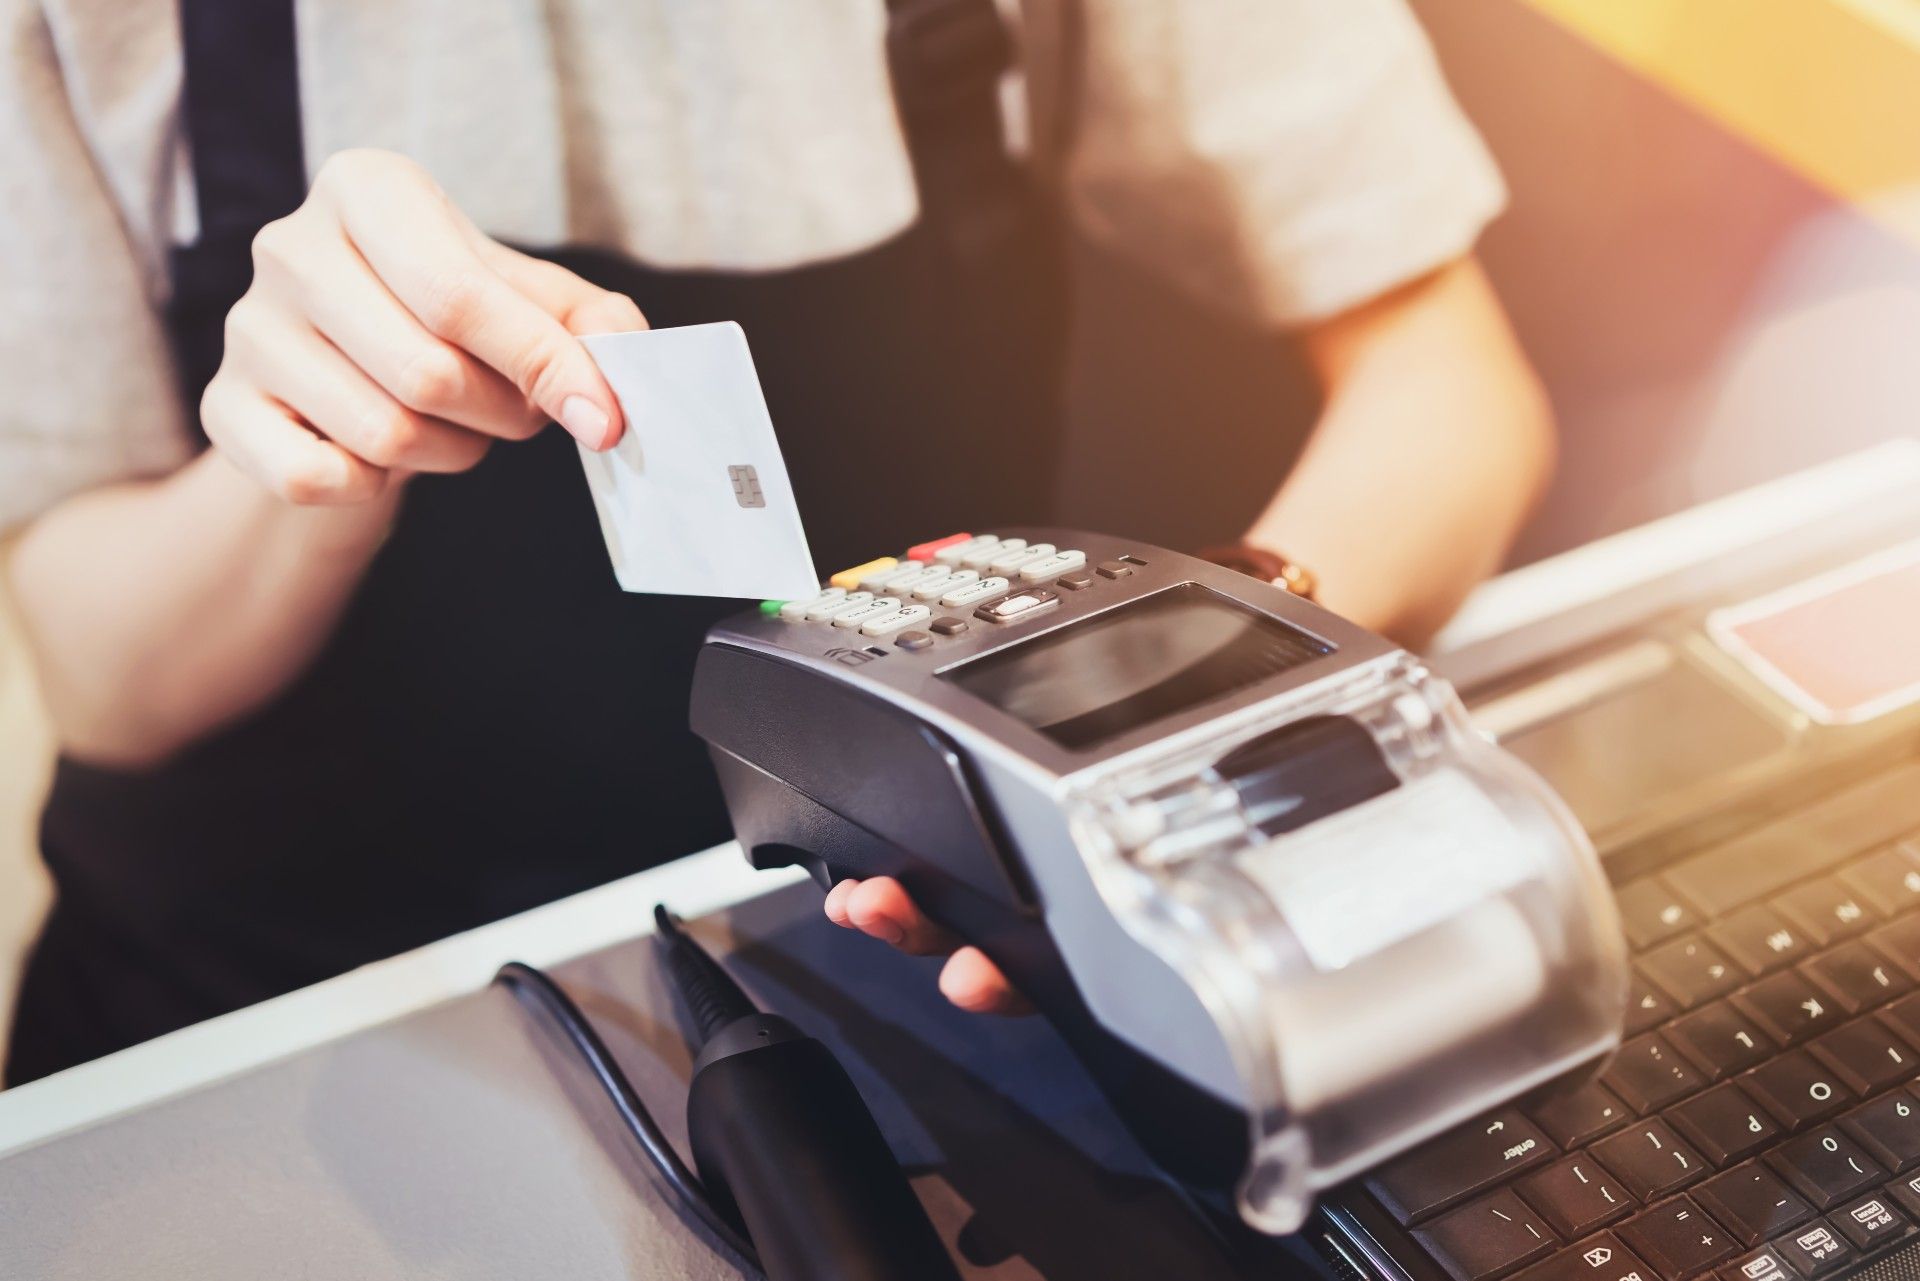 A person in an apron slides a credit card through a credit-card reader - data breach